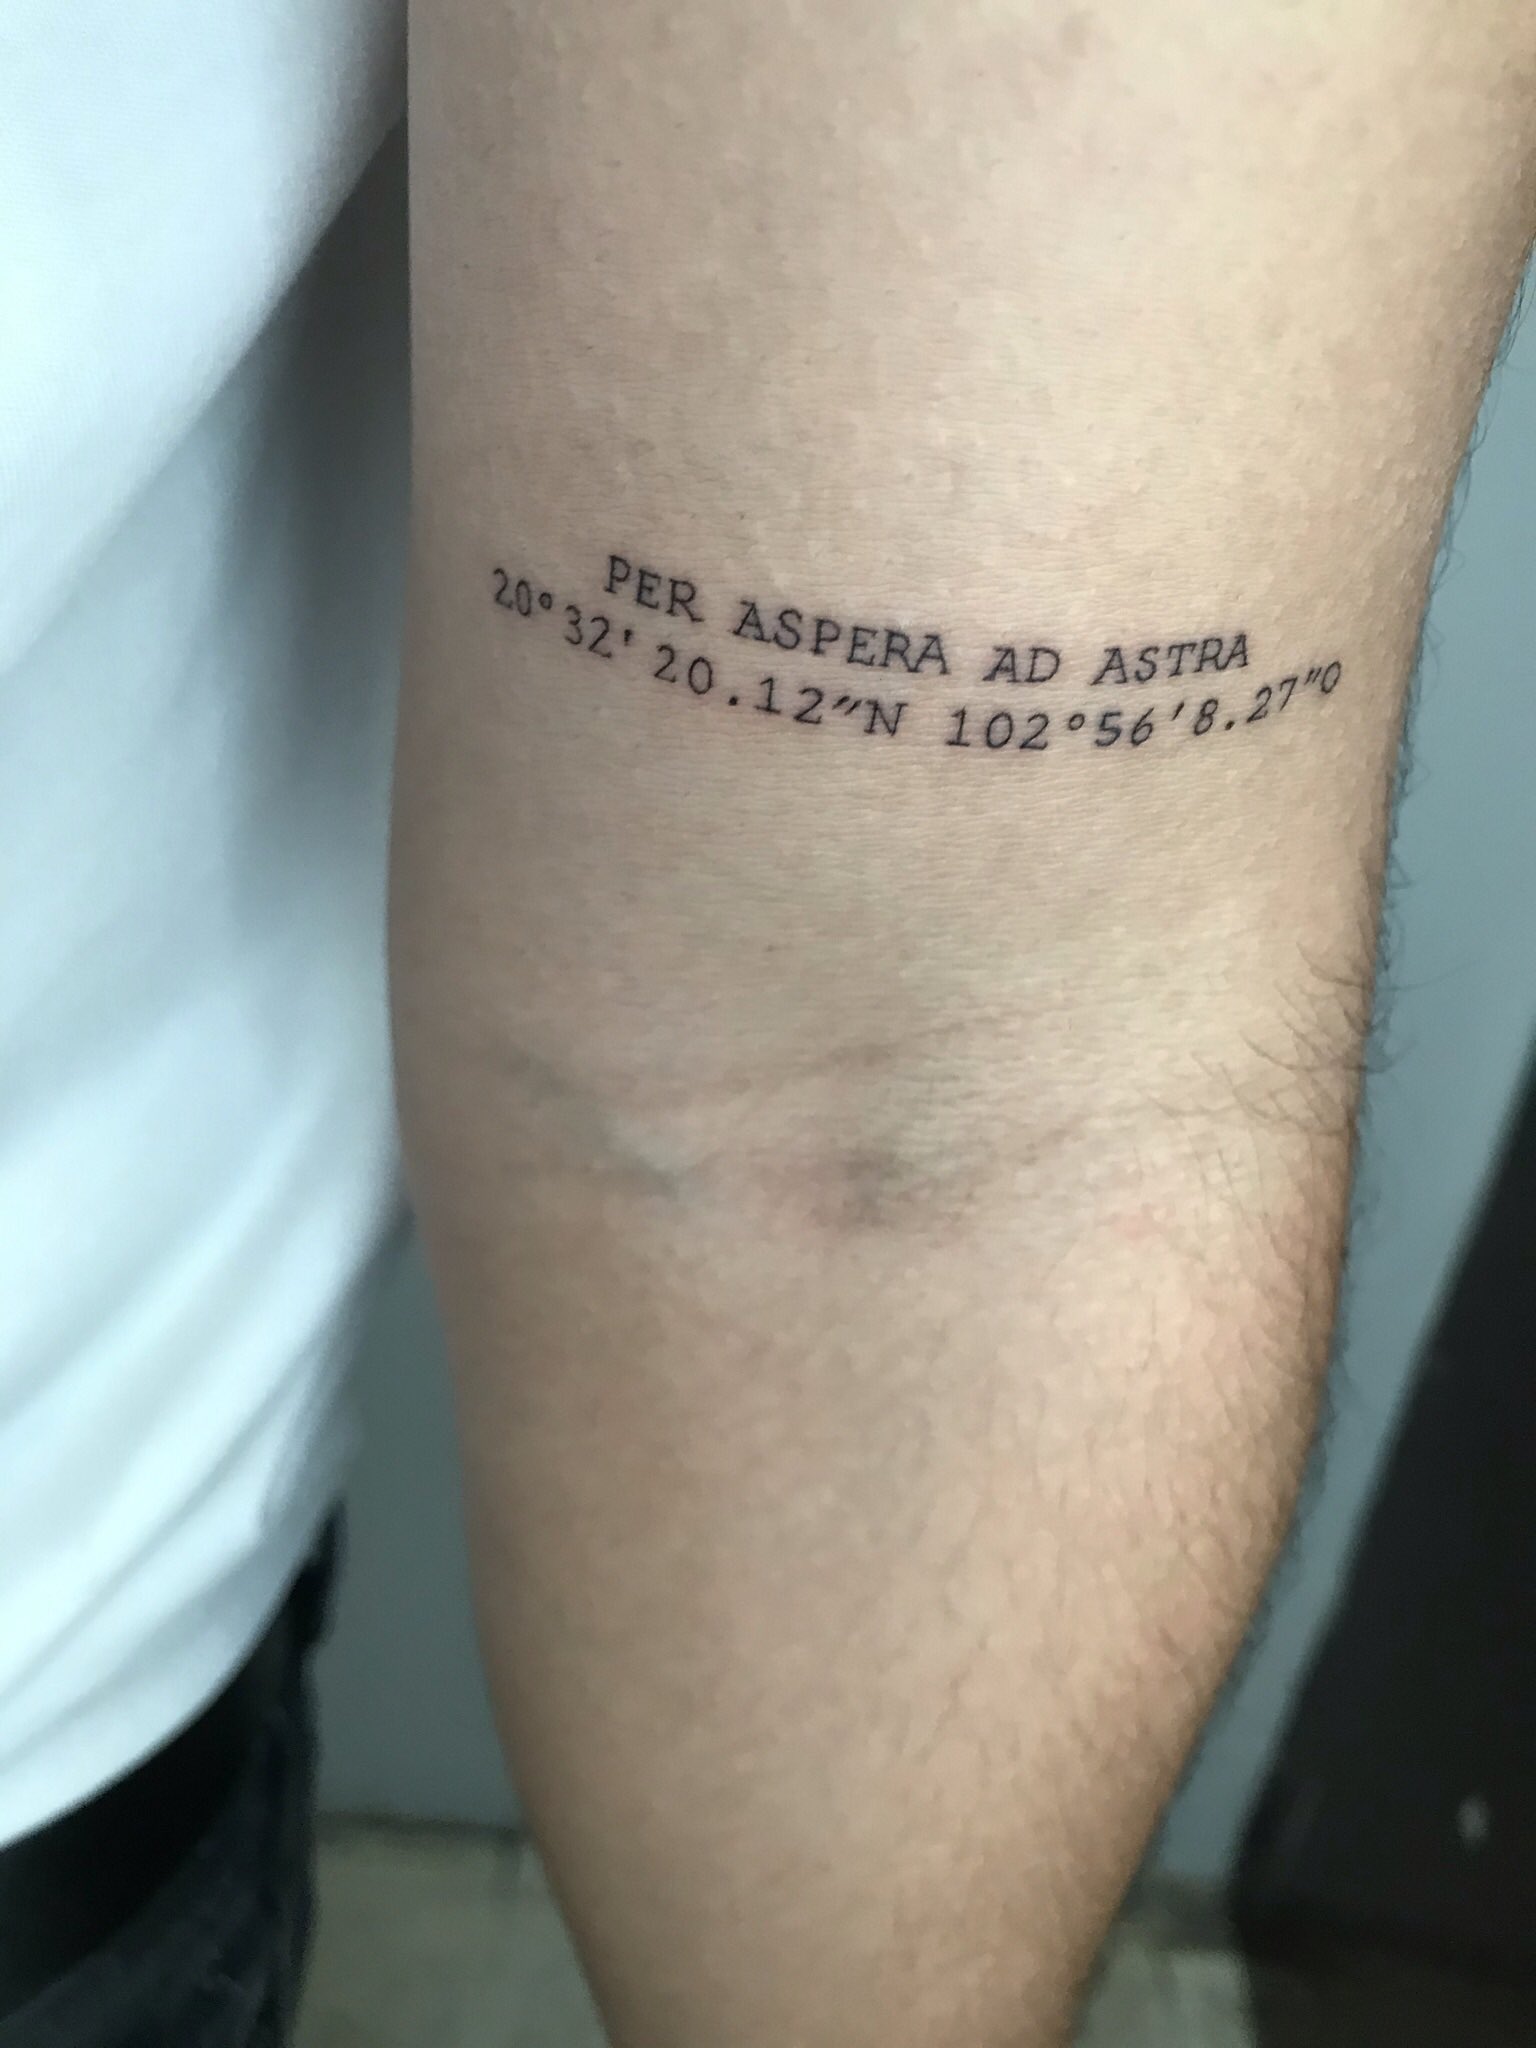 Sebastián pero no Yatra on X: "El tatuaje // la ubicación https://t.co/g1z1fuU1Jp" / X